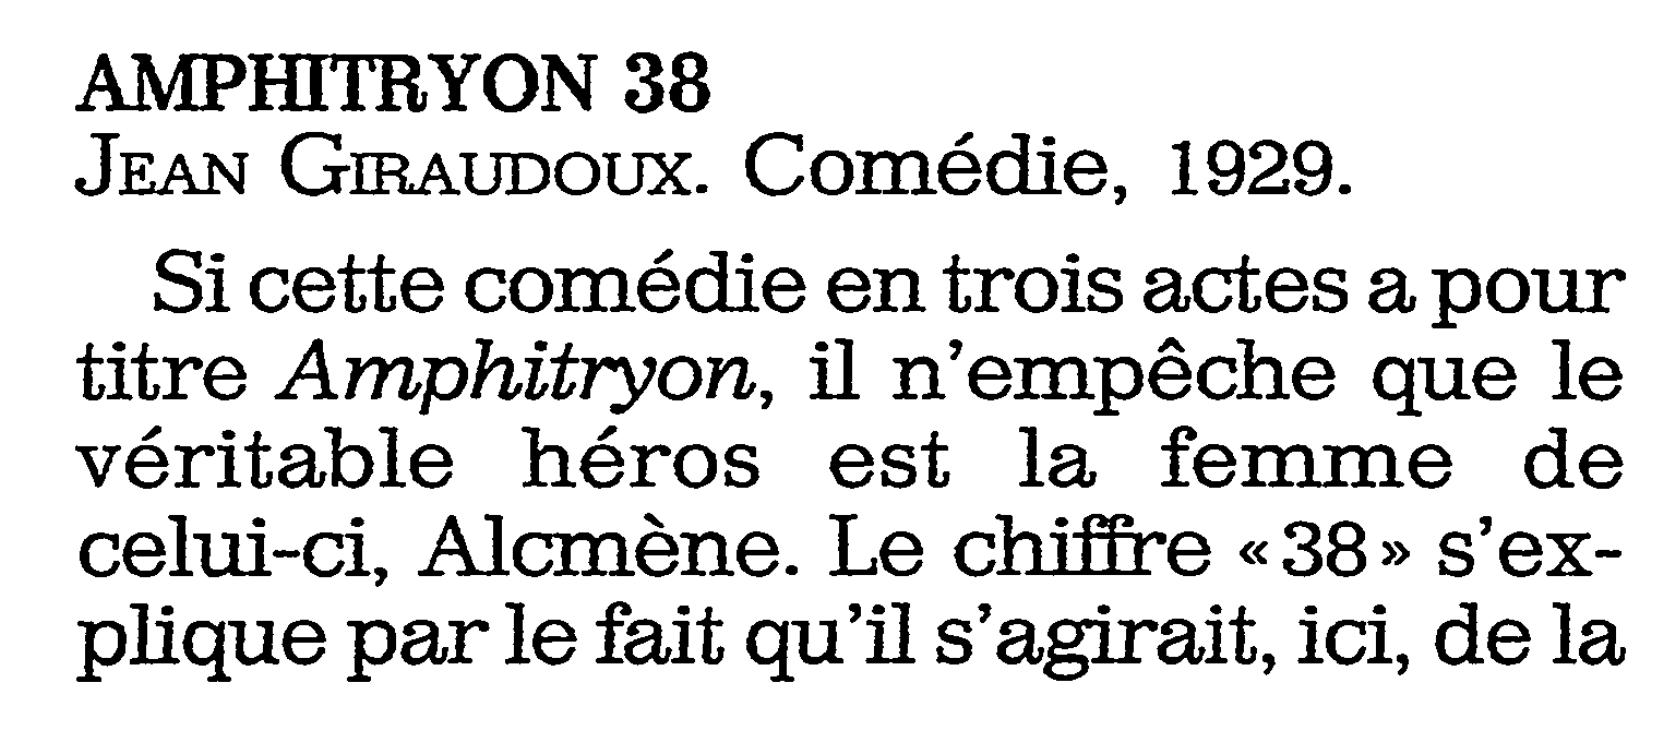 Prévisualisation du document AMPHITRYON 38 de JEAN Giraudoux. Comédie, 1929